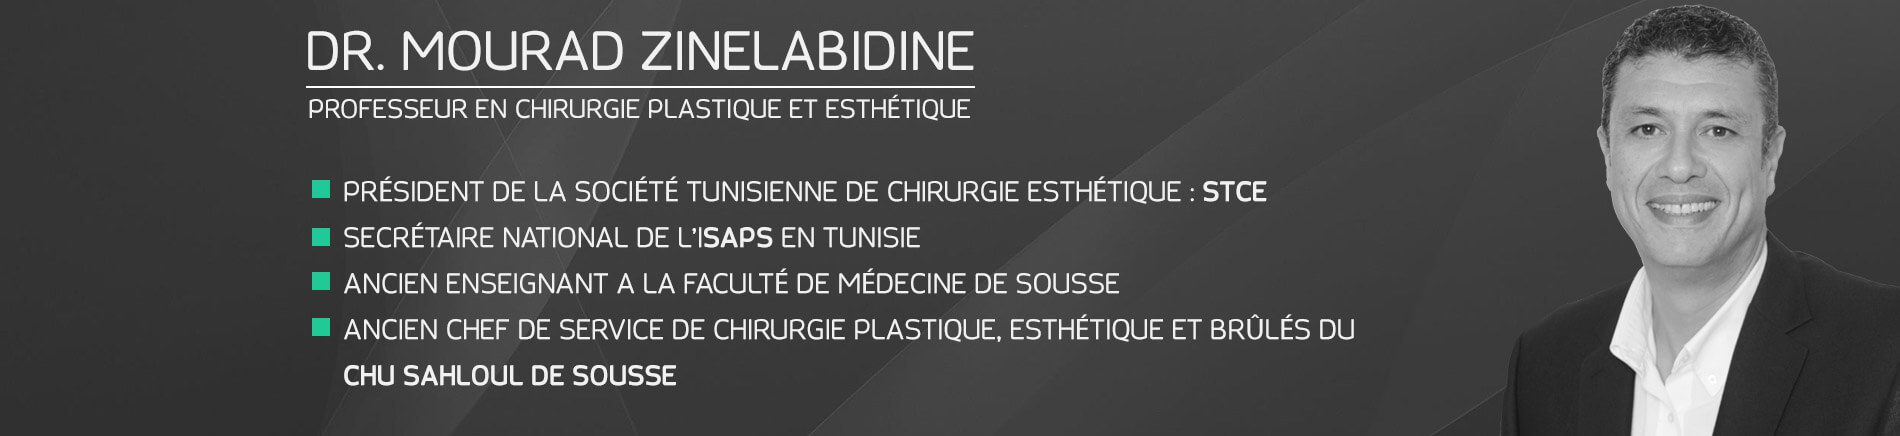 Dr Mourad zinelabidine